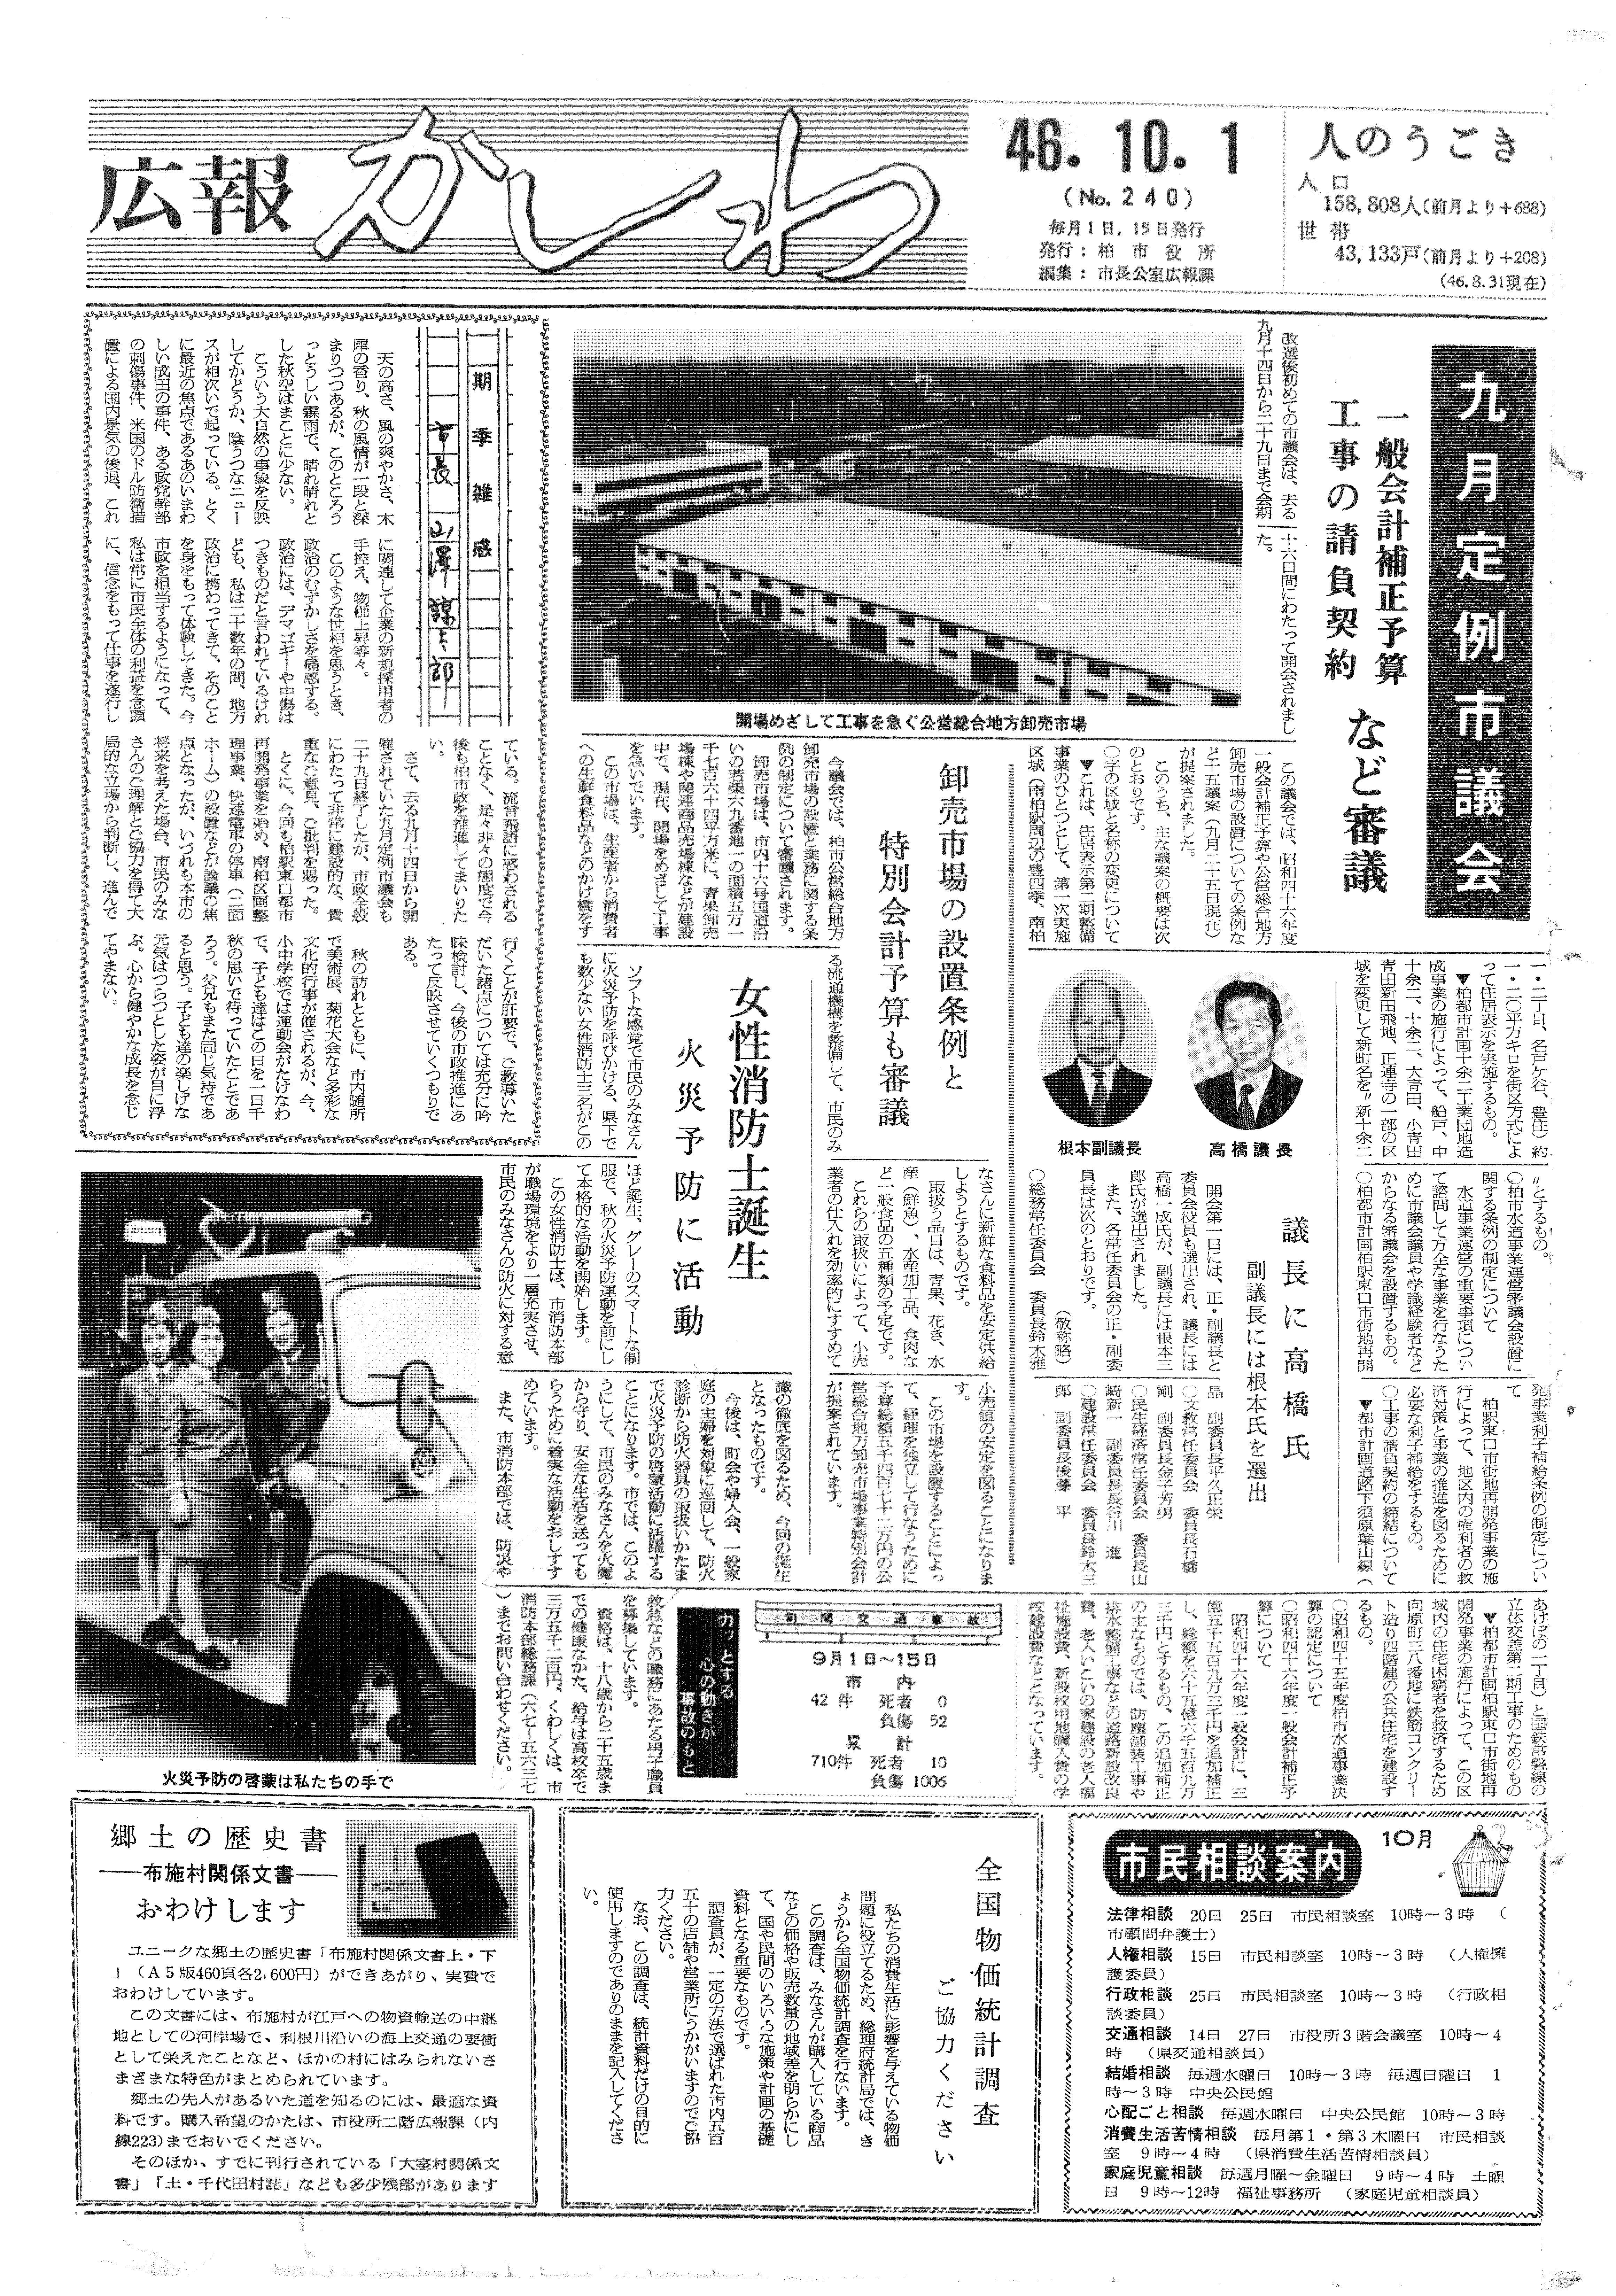 広報かしわ　昭和46年10月1日発行　240号